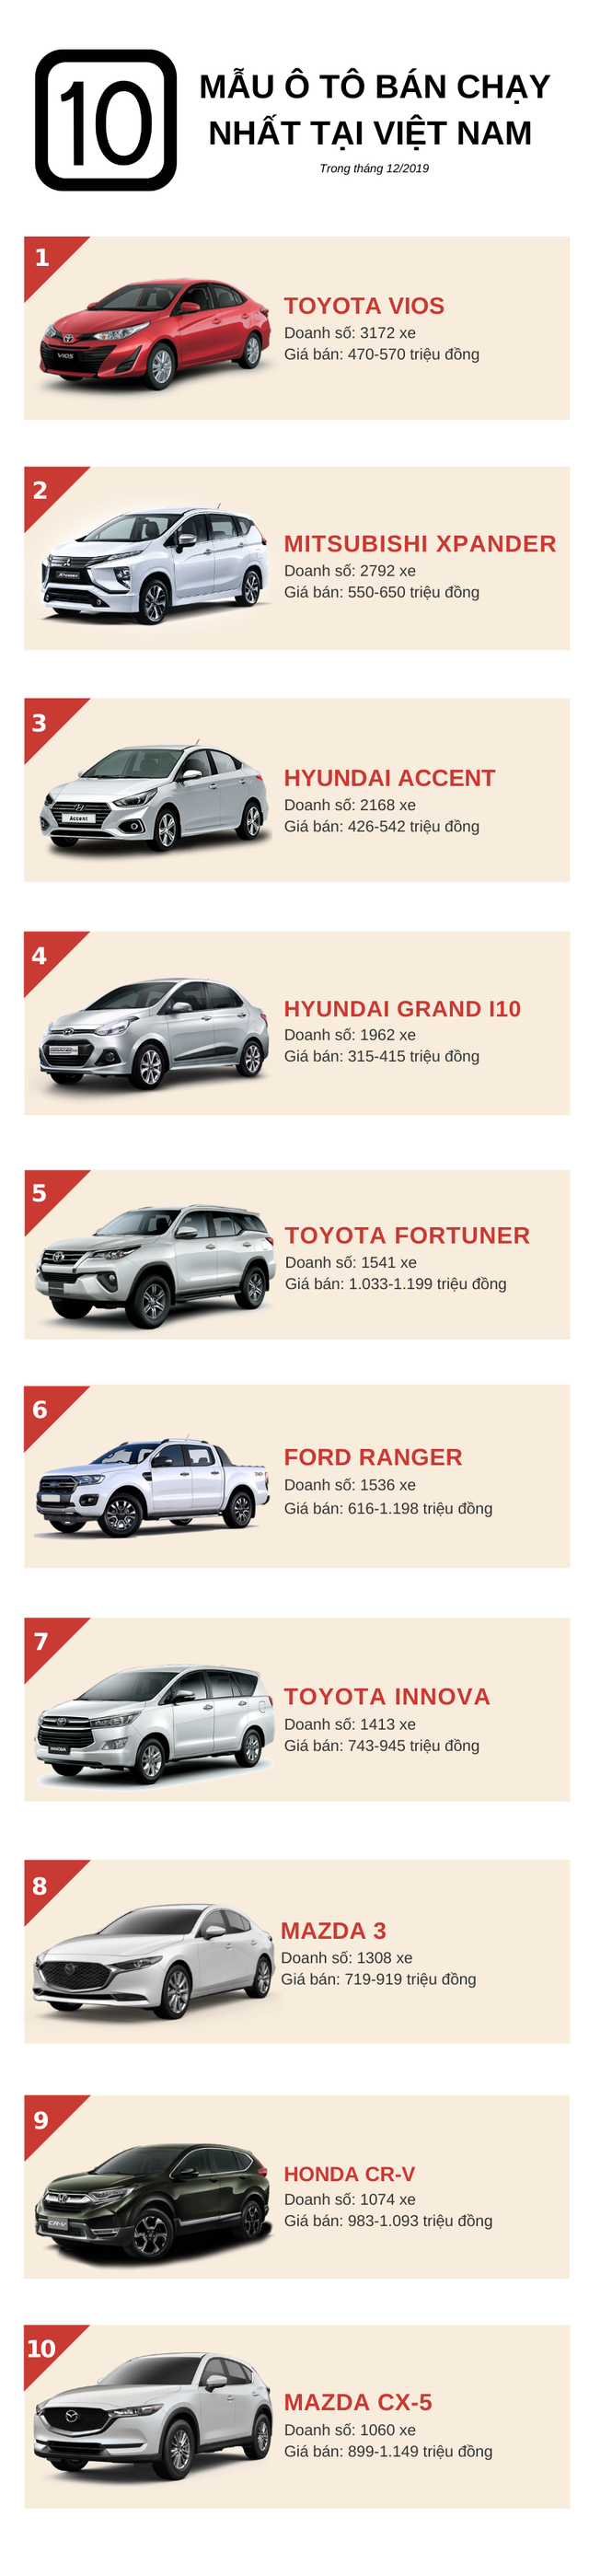 Top 10 ô tô đắt khách nhất tháng 12/2019: Toyota Vios trở lại ngôi vương, Mitsubishi Xpander rớt hạng - Ảnh 1.